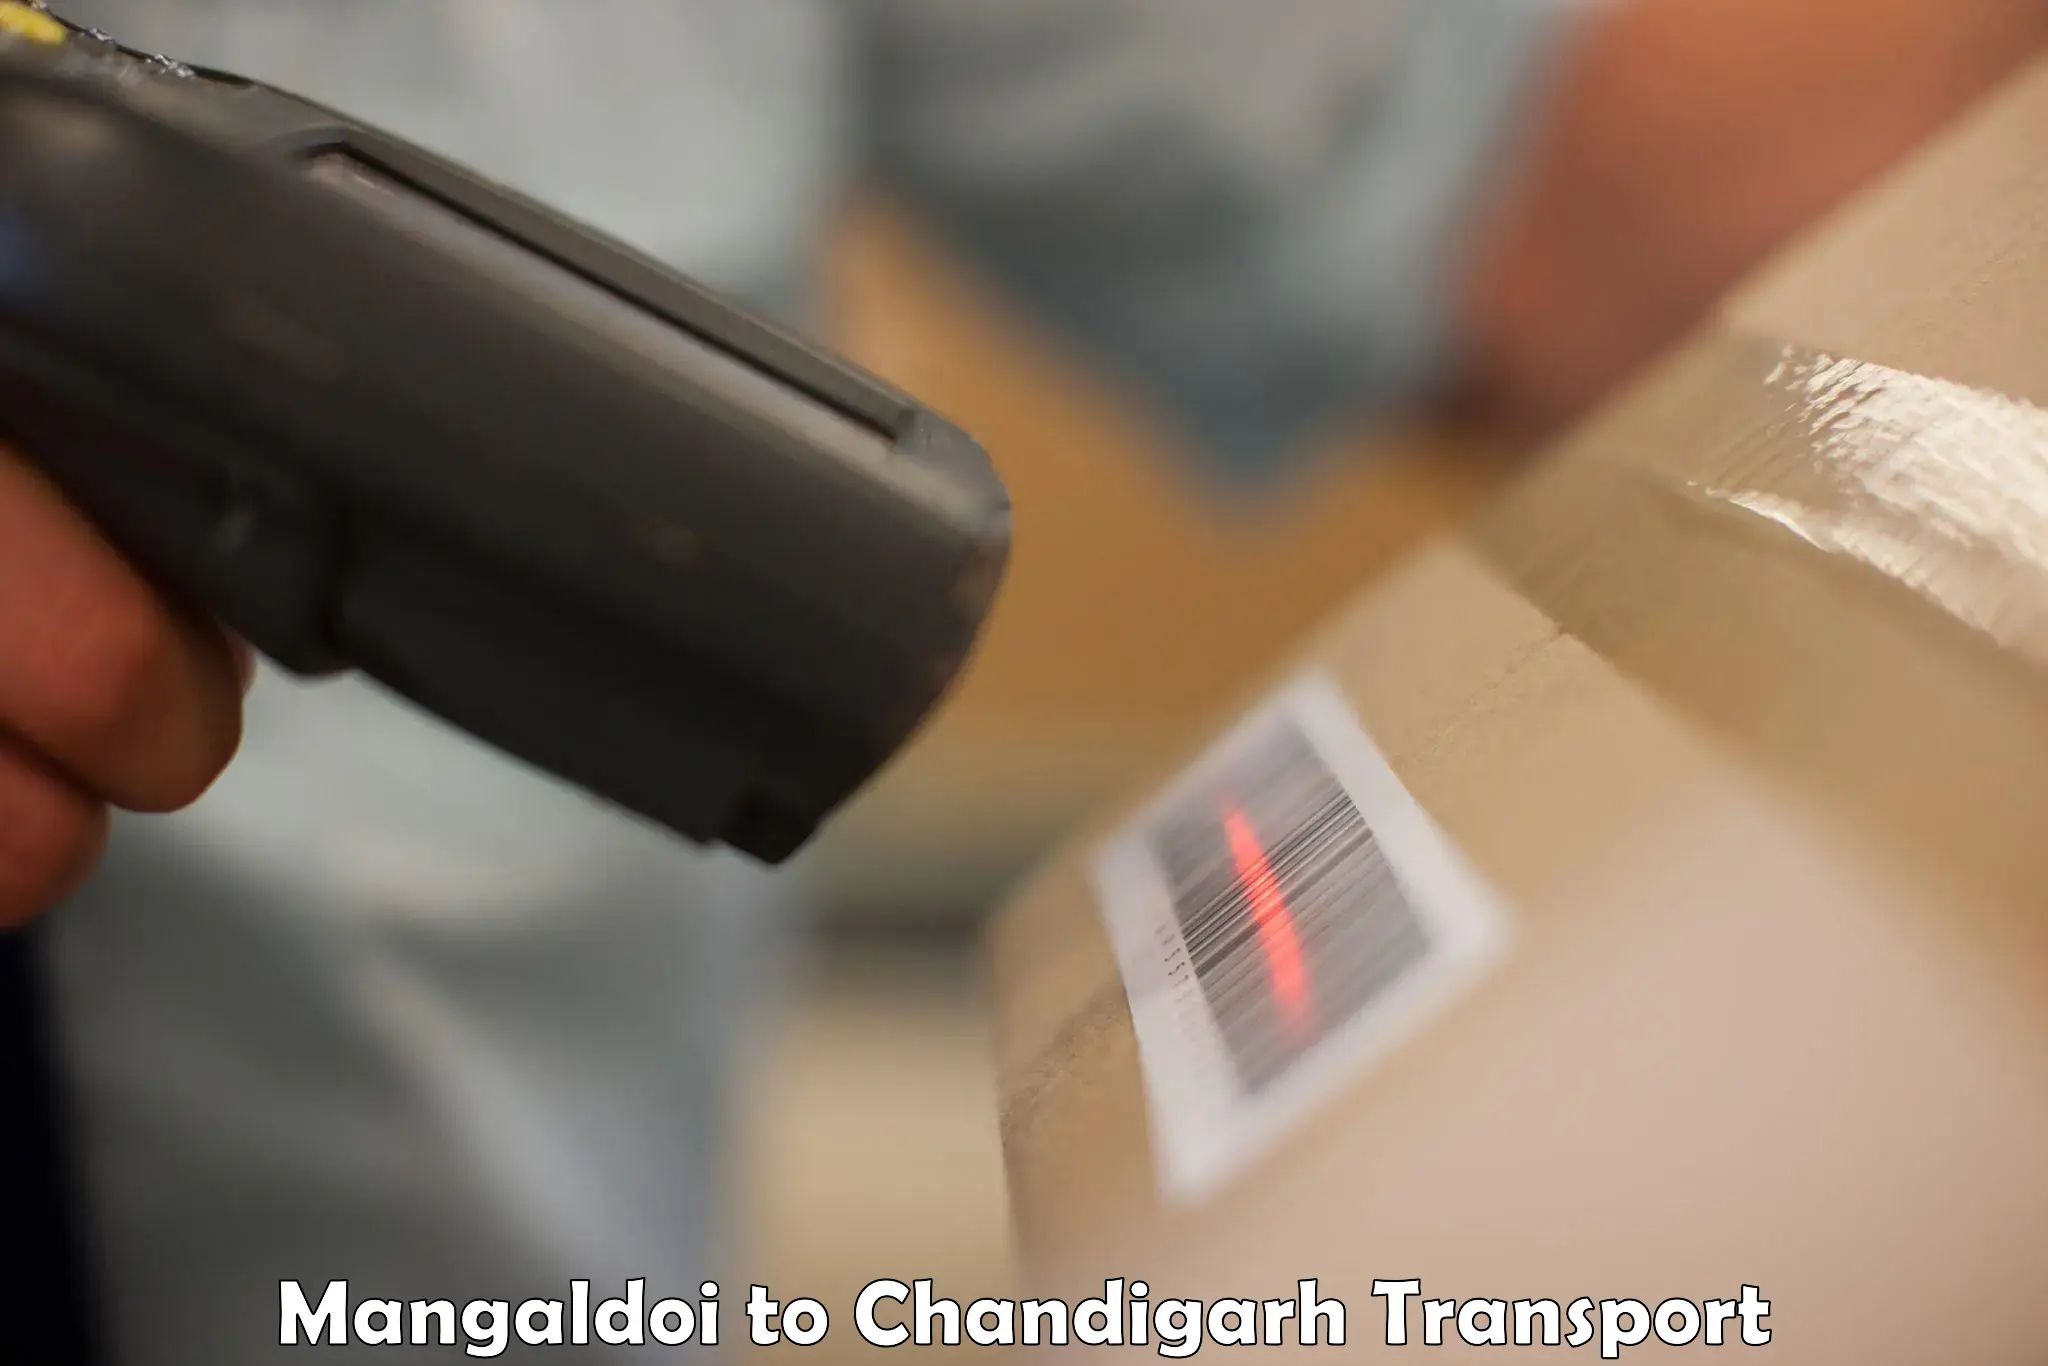 Cycle transportation service Mangaldoi to Chandigarh